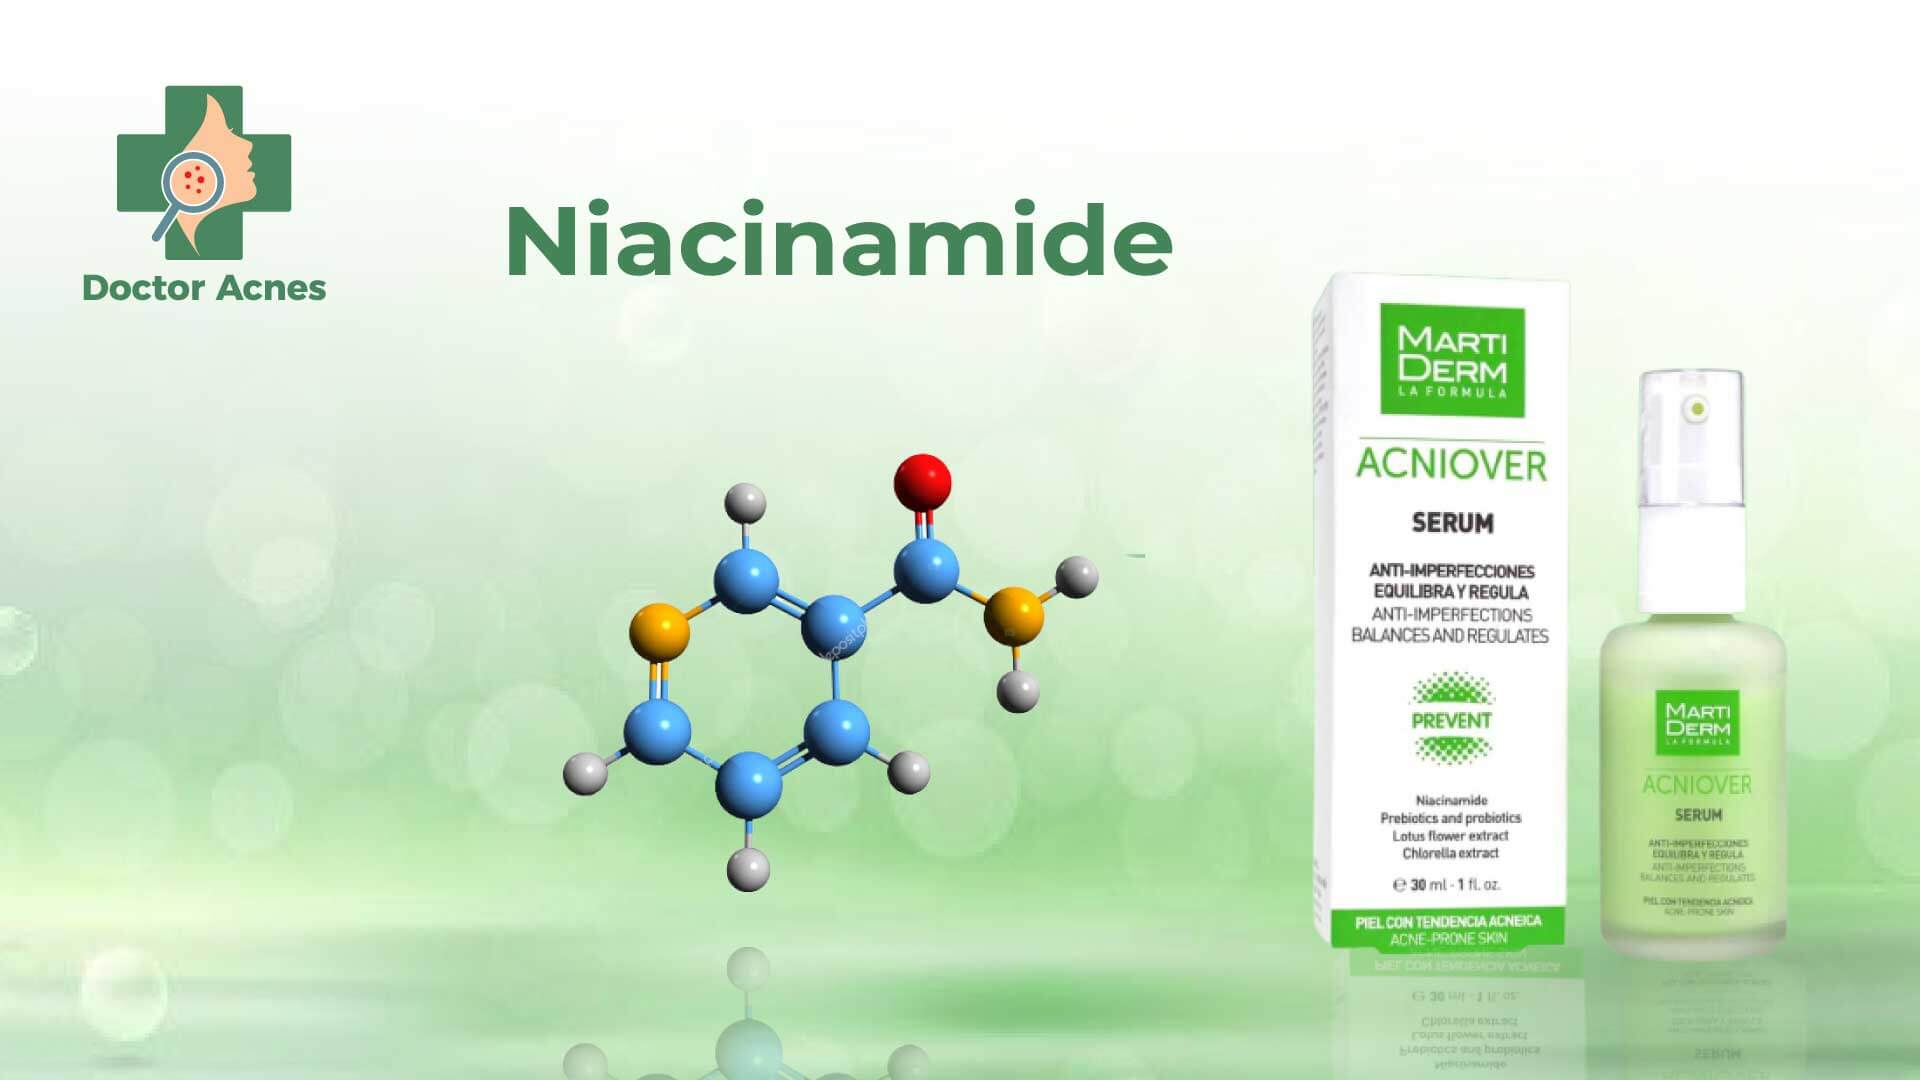 Niacinamide Martiderm - Doctor Acnes